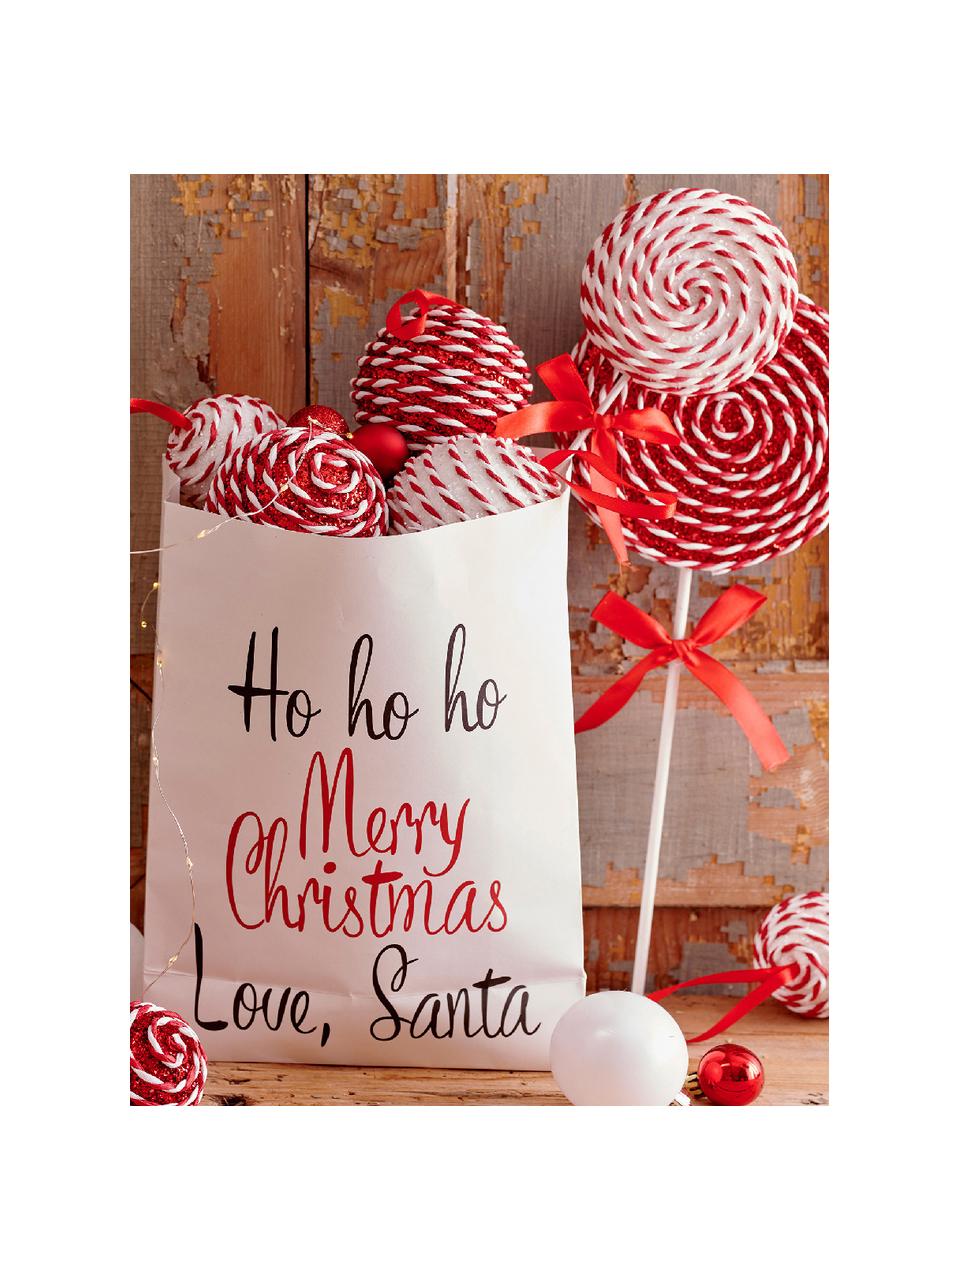 Weihnachtskugeln Pop, 12er-Set, Schaumstoff, Rot, Weiß, Ø 8 cm